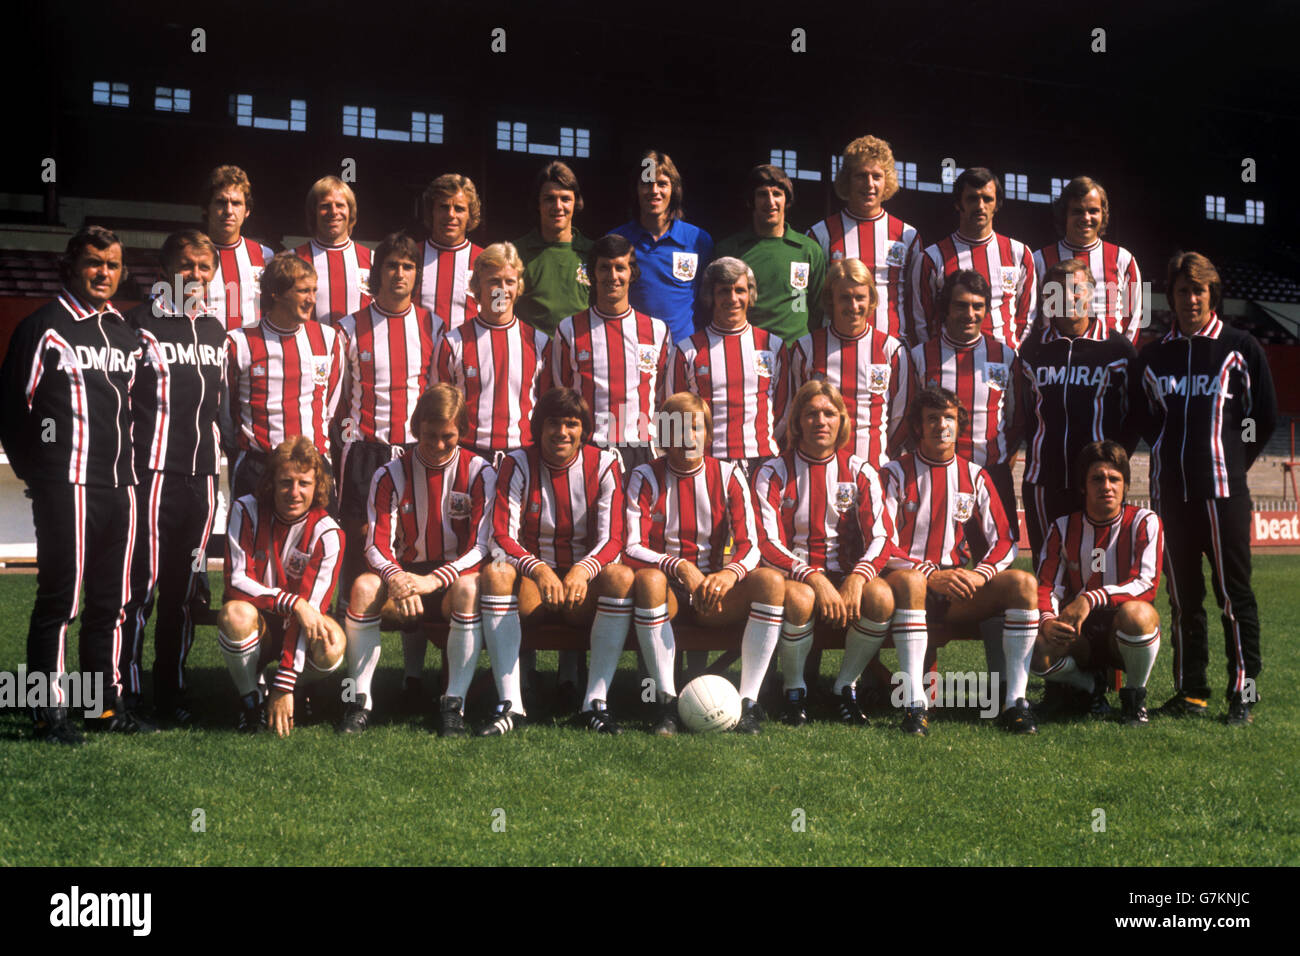 sheffield-united-squad-for-the-197576-season-back-row-l-r-steve-goulding-G7KNJC.jpg